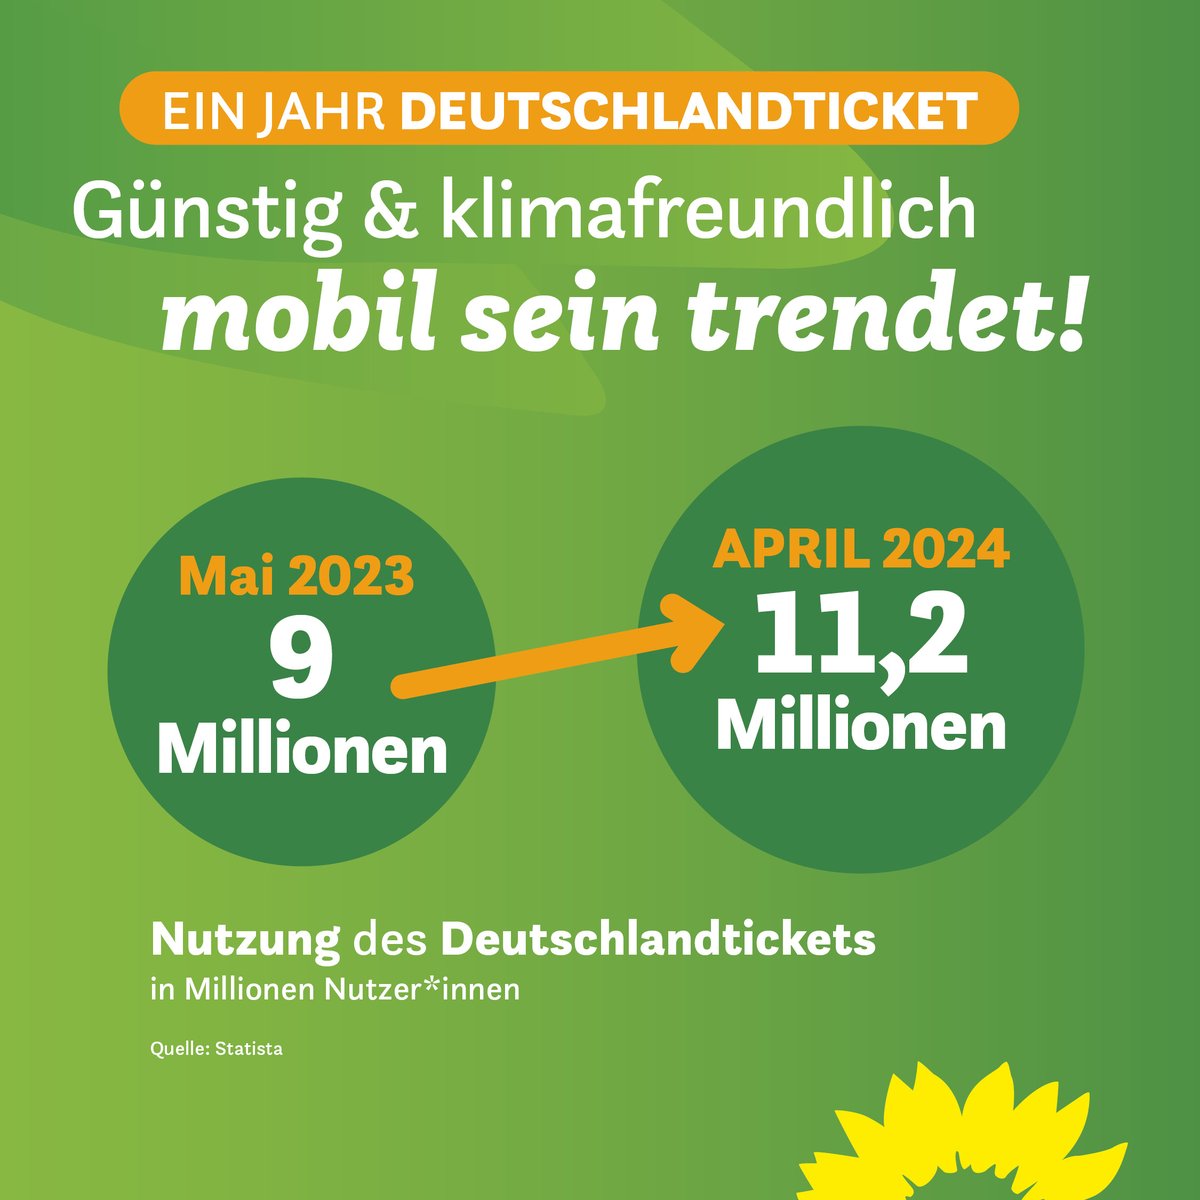 Seit einem Jahr sind Millionen Menschen mit dem #Deutschlandticket günstig & klimafreundlich mobil! Ab diesem Sommer kommt es als solidarfinanziertes Semesterticket, sodass endlich auch Studierende mit einem Ticket deutschlandweit im Regional- & Nahverkehr unterwegs sein können.